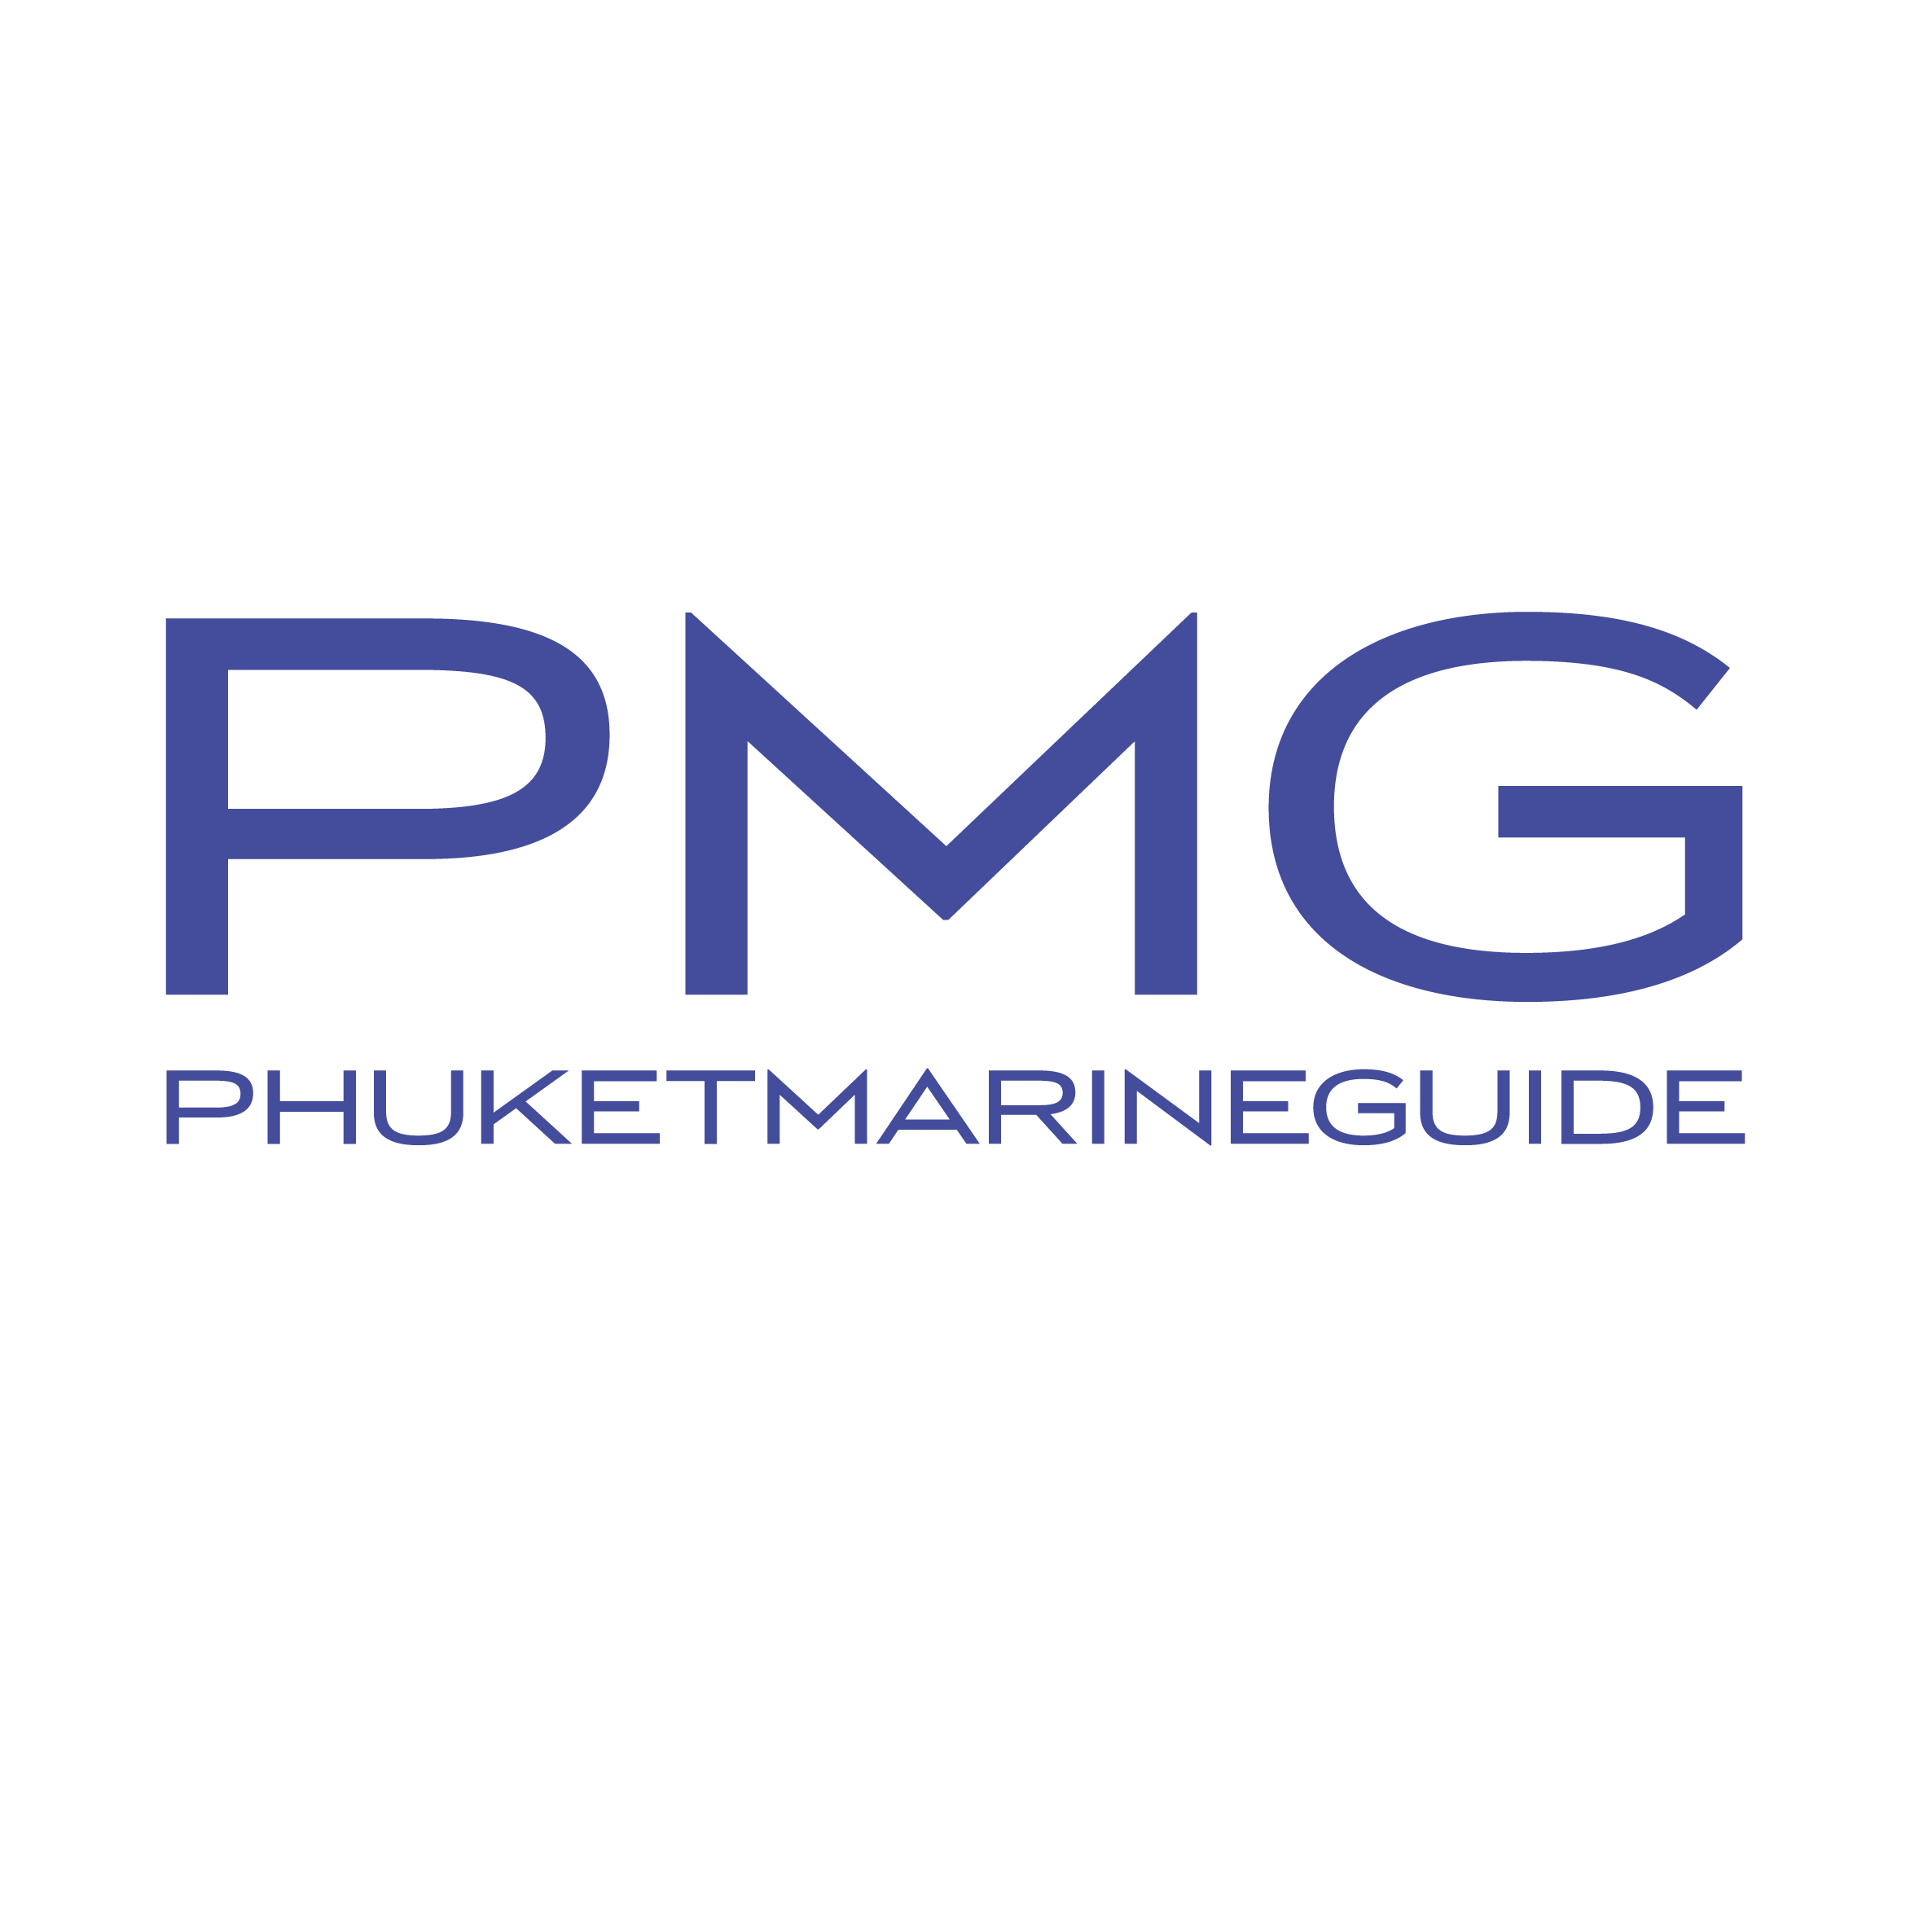 Phuket Marine Guide